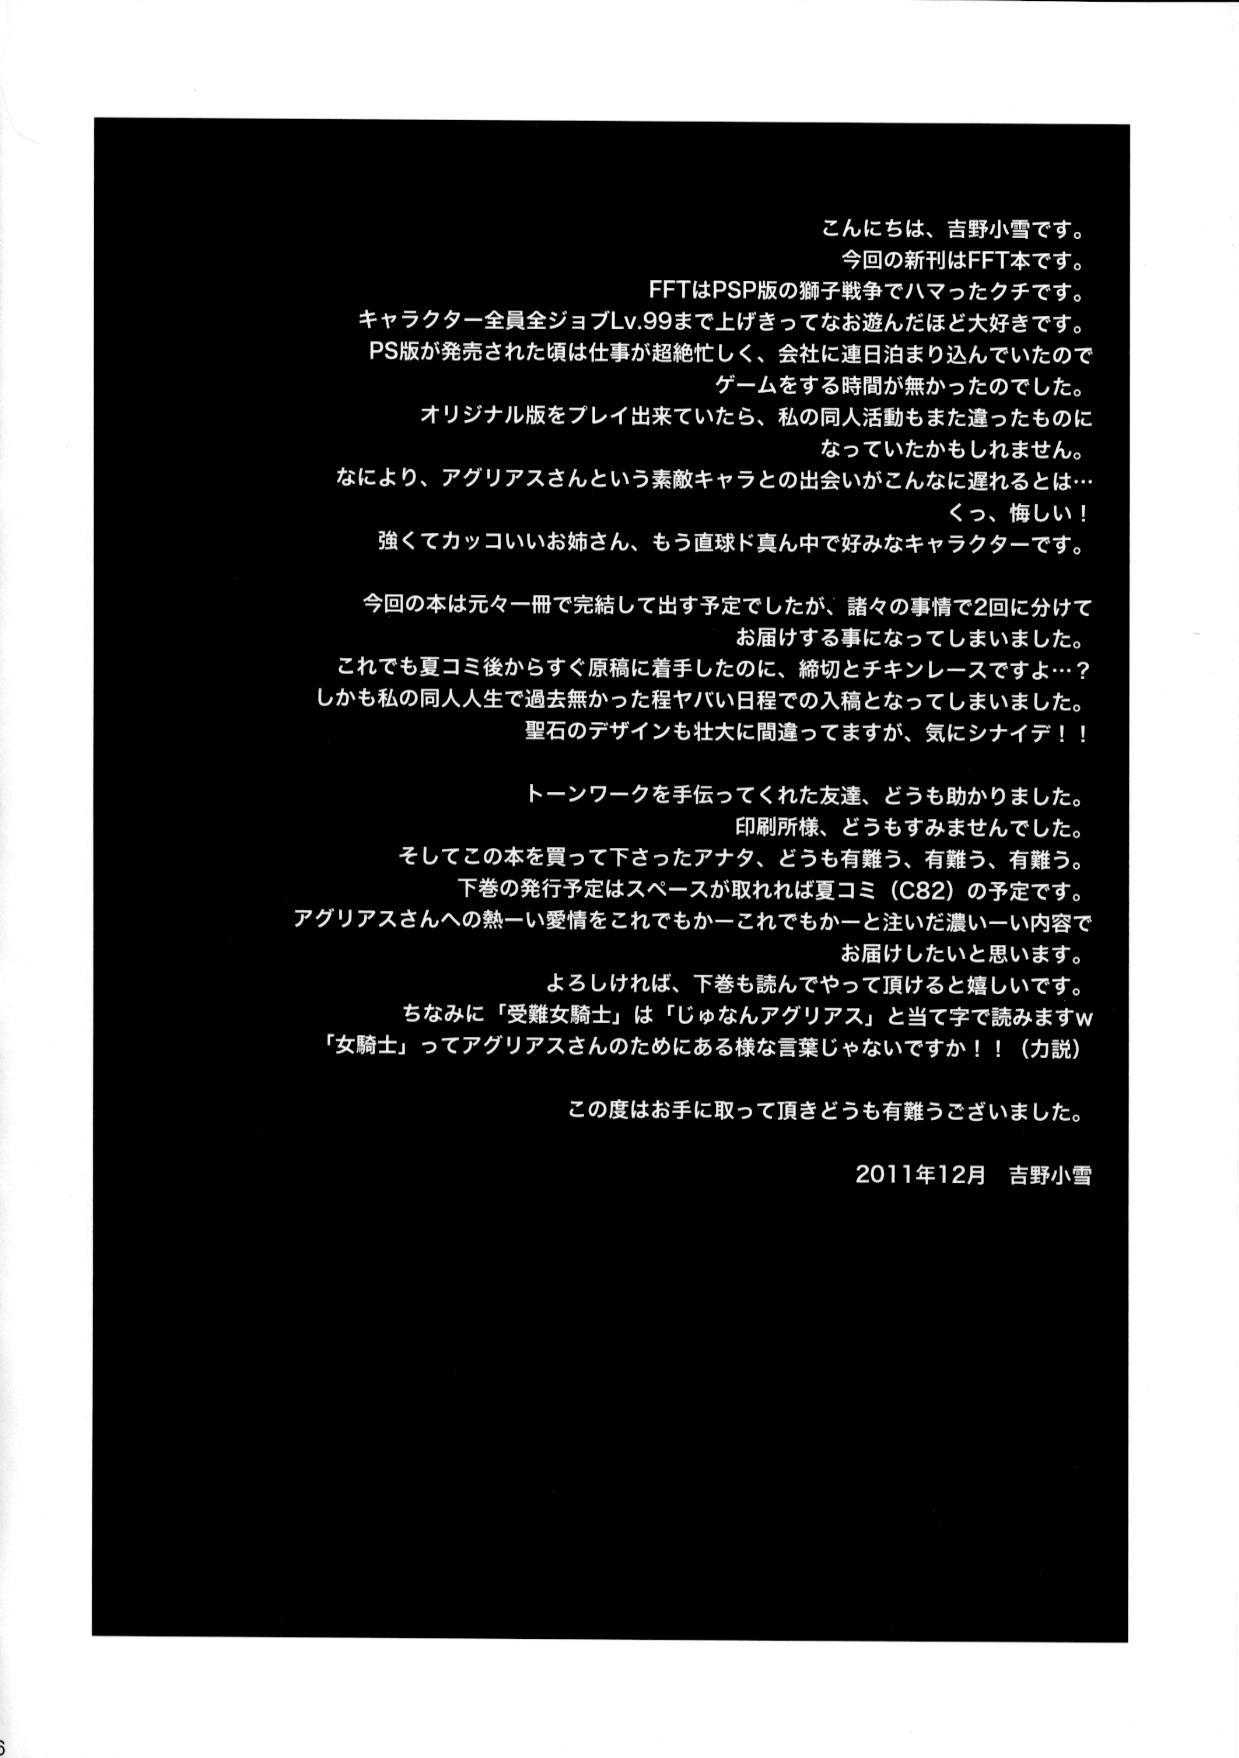 [Mederu Kai (Yoshino Koyuki)] Junan Agrias Joukan (Final Fantasy Tactics) [愛でる会 (吉野小雪)] 受難女騎士・上巻 (ファイナルファンタジータクティクス)